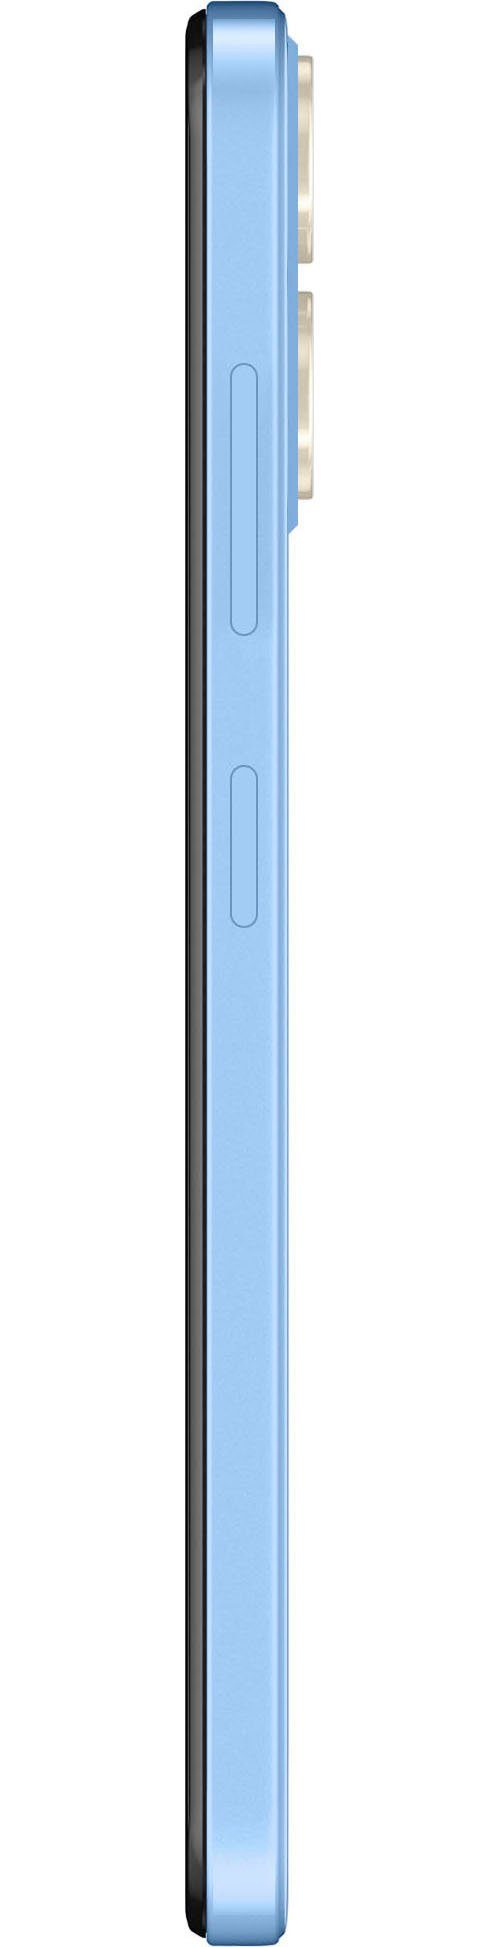 ZTE Blade A73 Smartphone (16,76 50 Kamera) Zoll, cm/6,6 MP 128 blau GB Speicherplatz